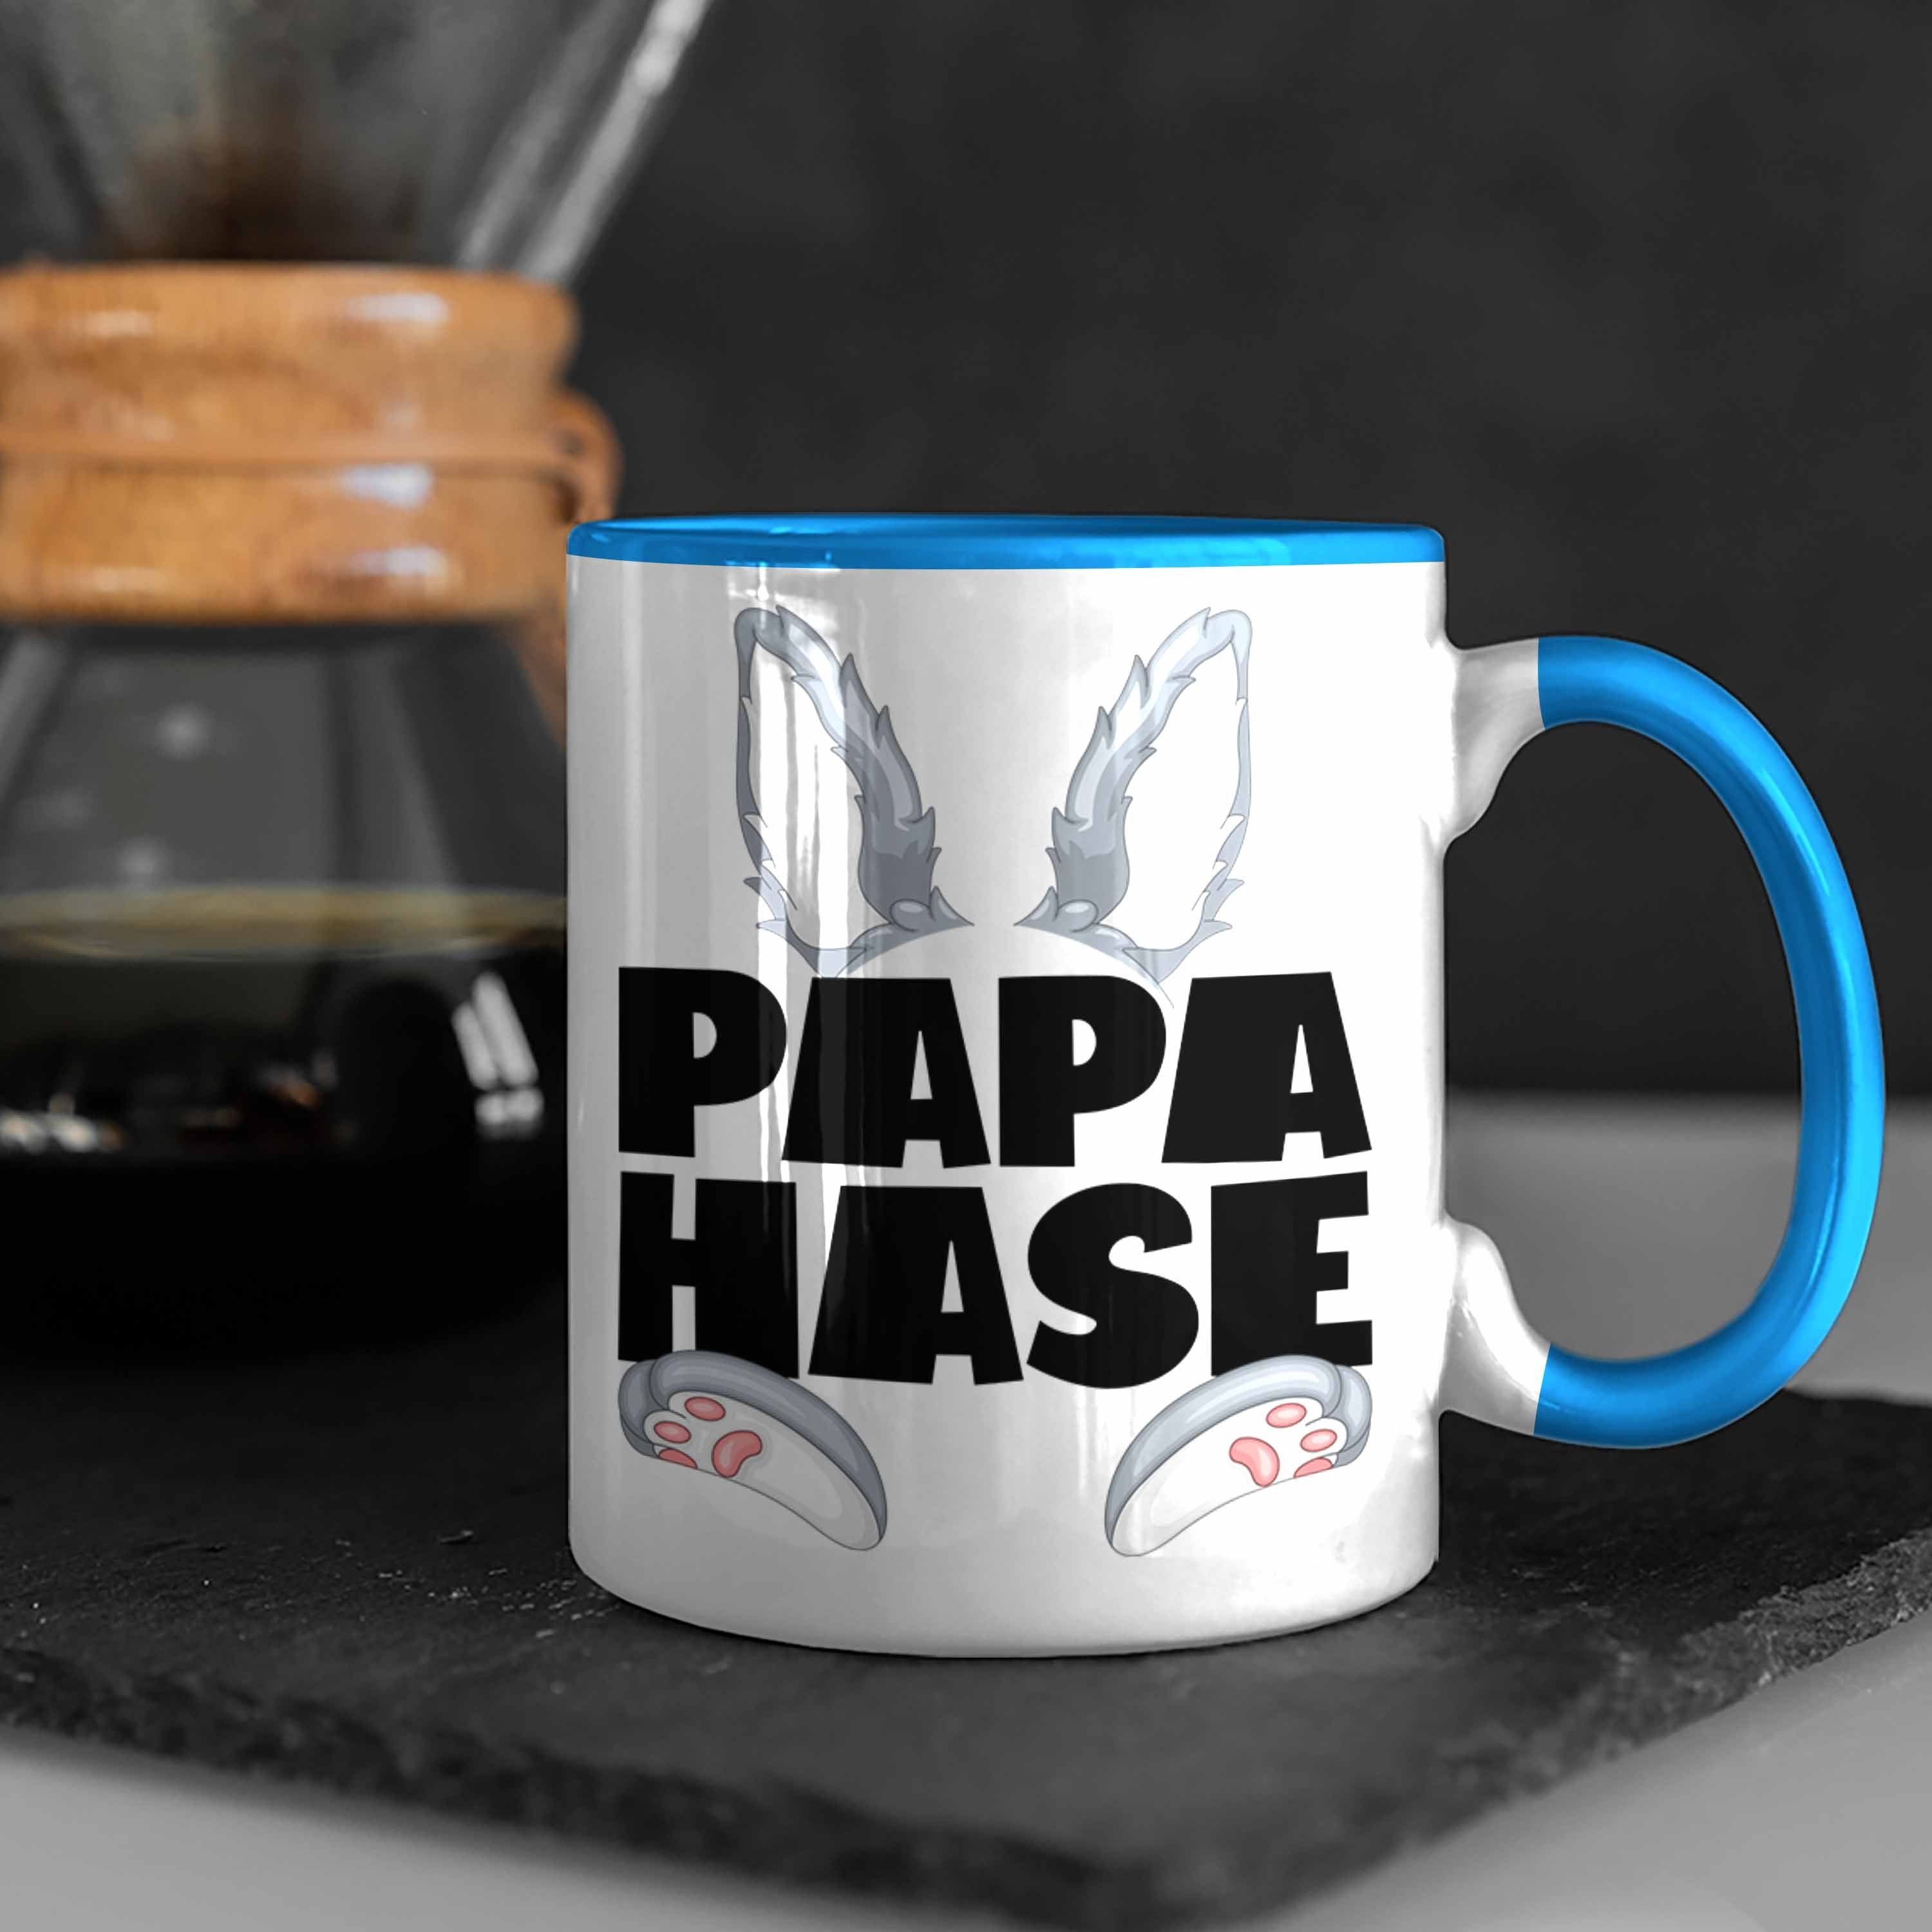 für Blau Kaffee-Becher Hasen-Vater Papa Geschenkidee Trendation Tasse Tasse Geschenk Hase Be